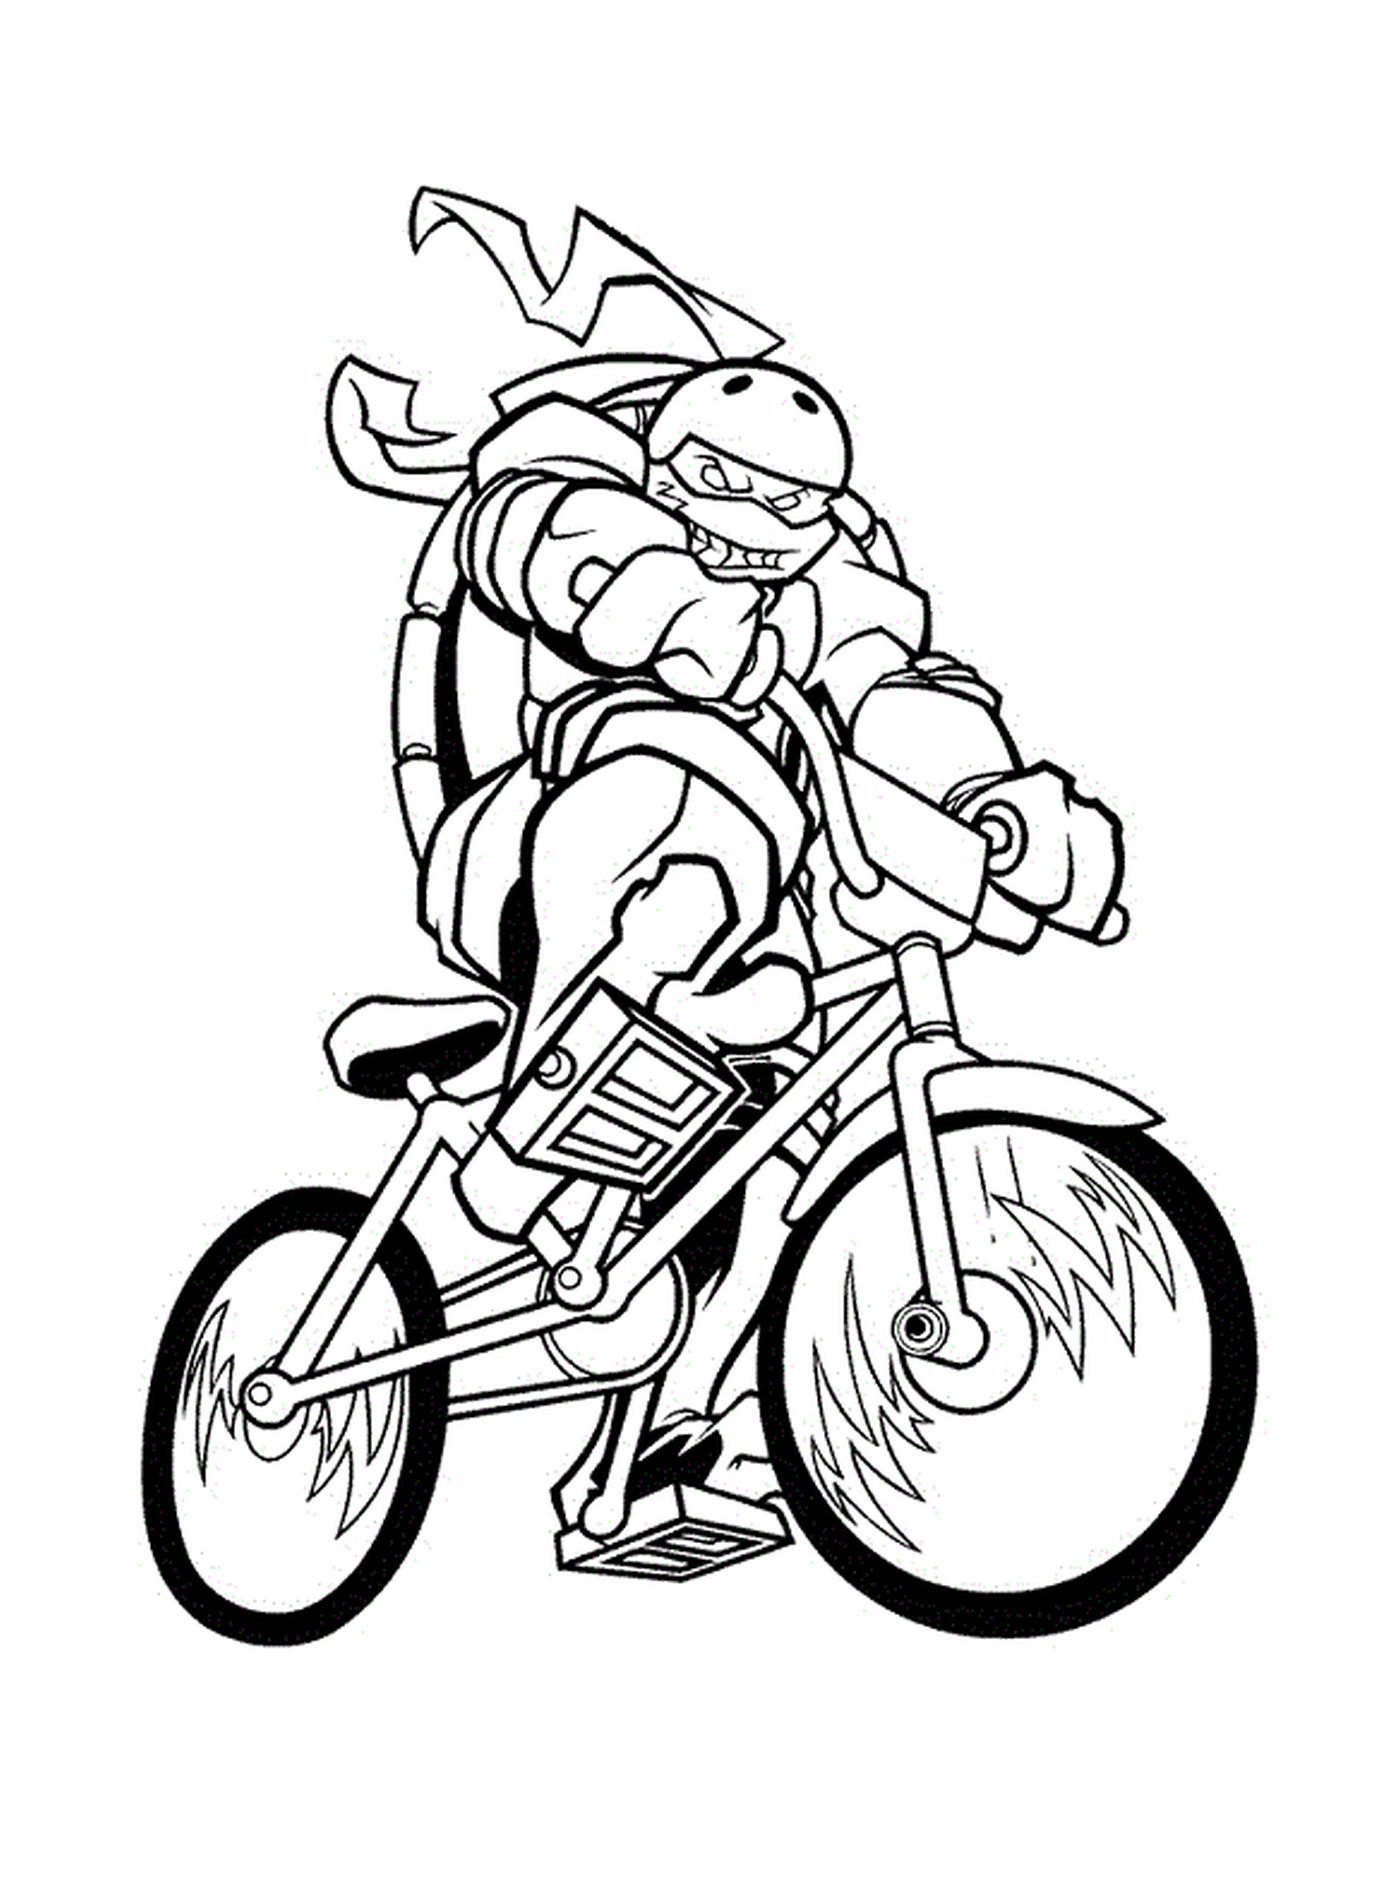  Tartaruga ninja de bicicleta 